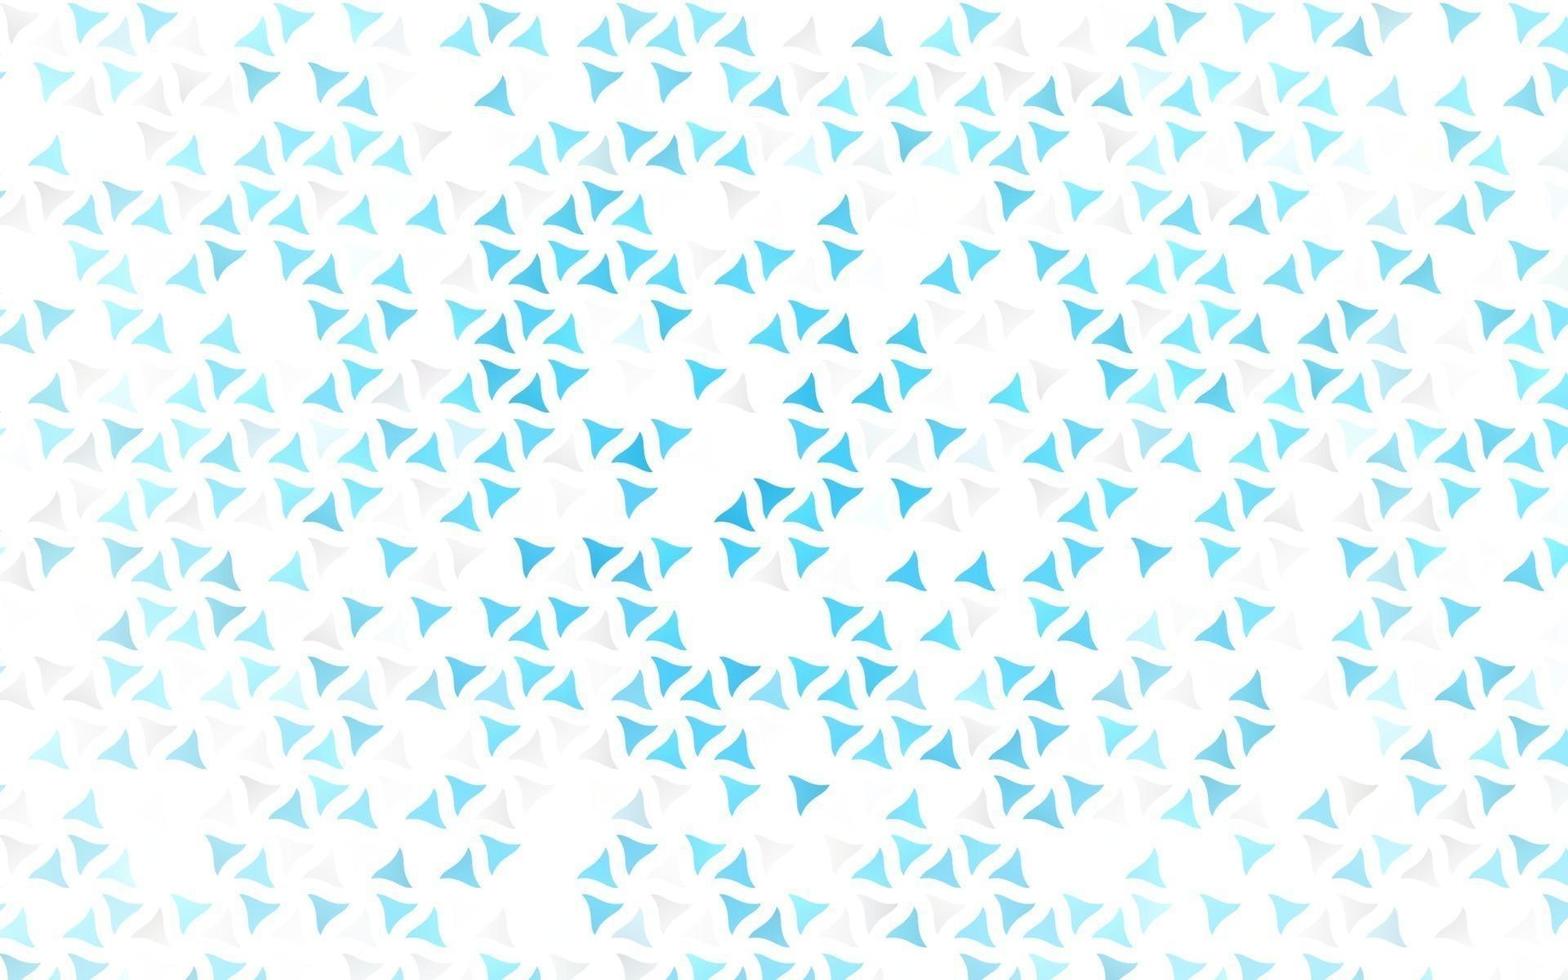 couverture transparente de vecteur bleu clair dans un style polygonal.